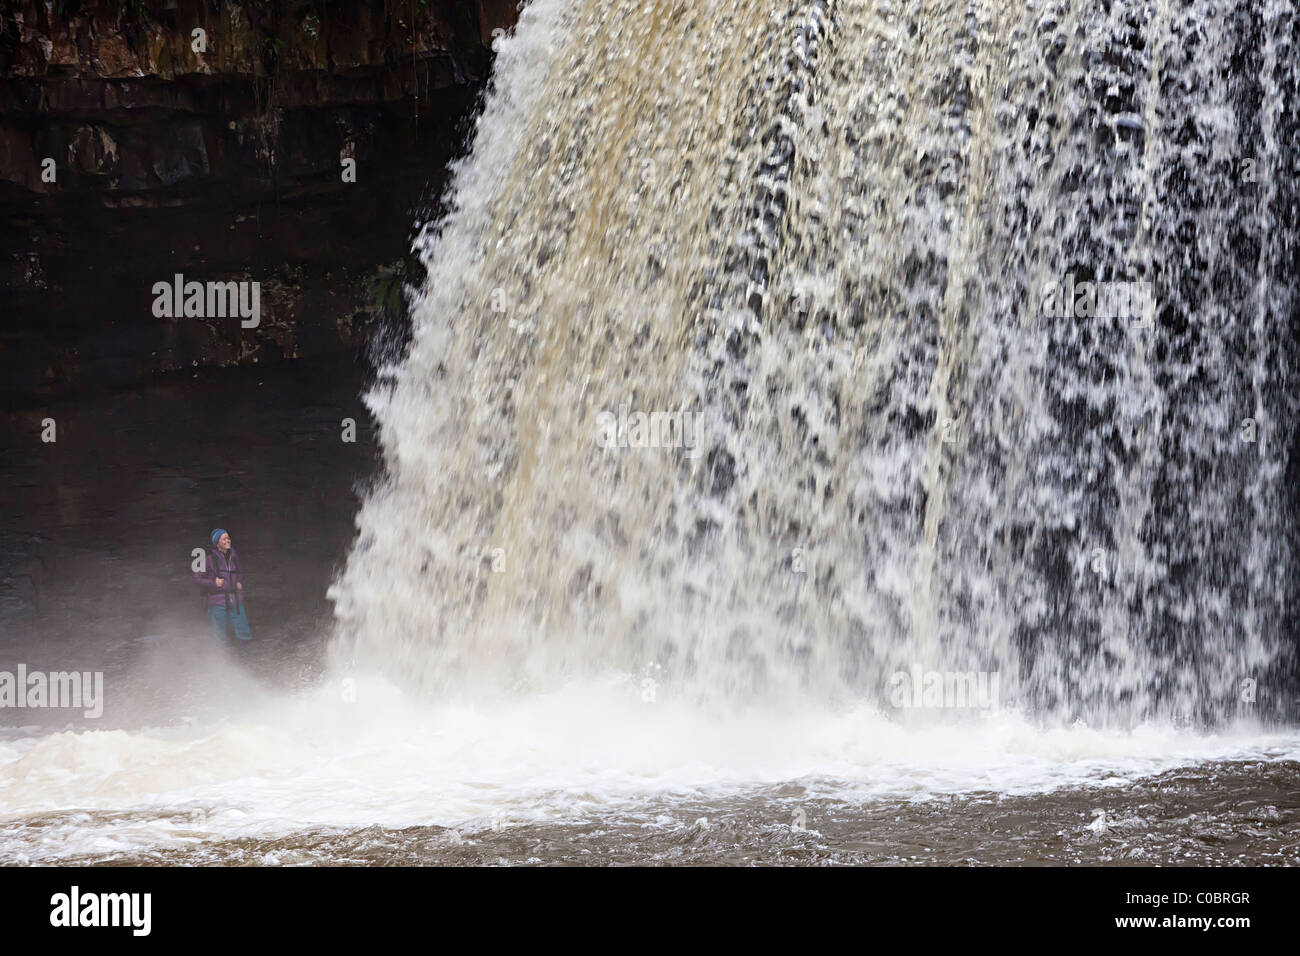 Sgwd Gwladus Wasserfall mit Person steht im Spray Wasserfällen gehen Powys Wales UK Stockfoto